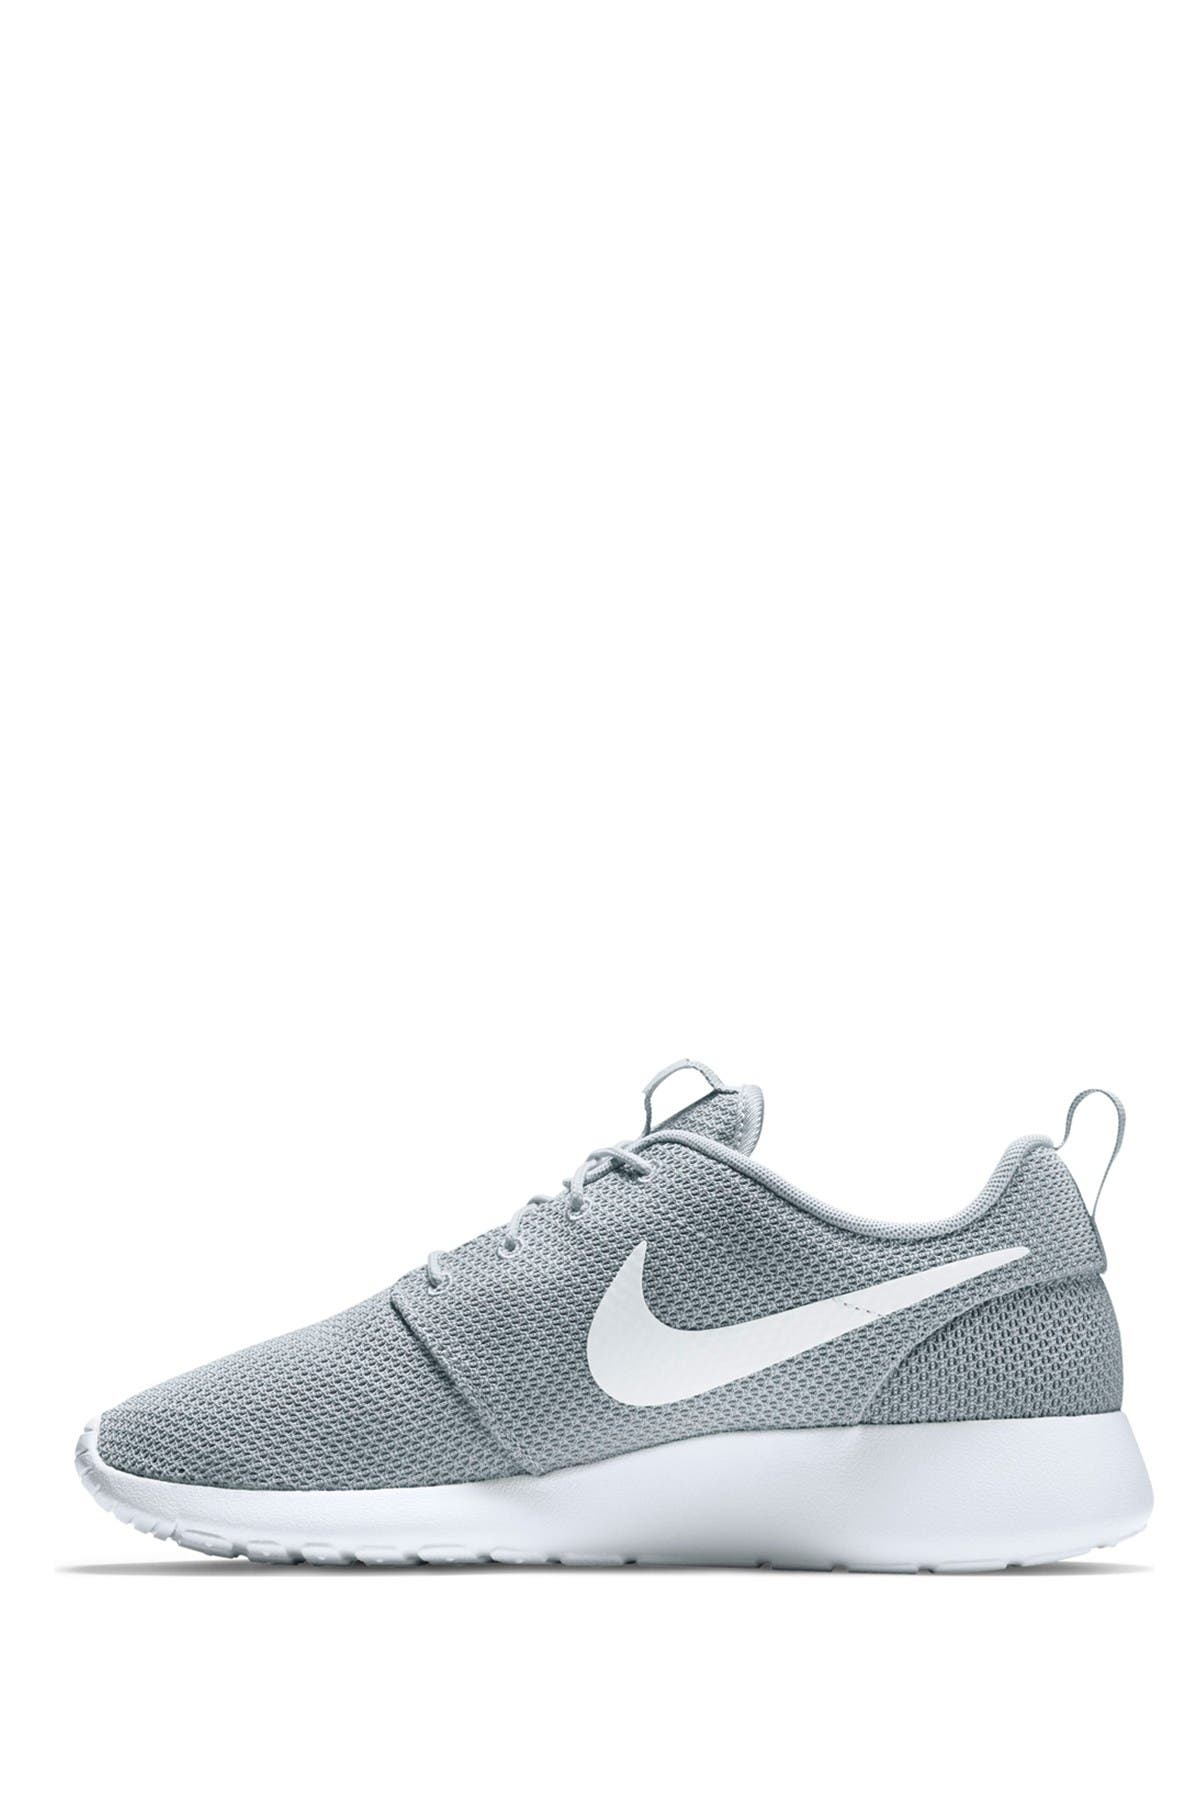 Nike | Roshe One Running Shoe 